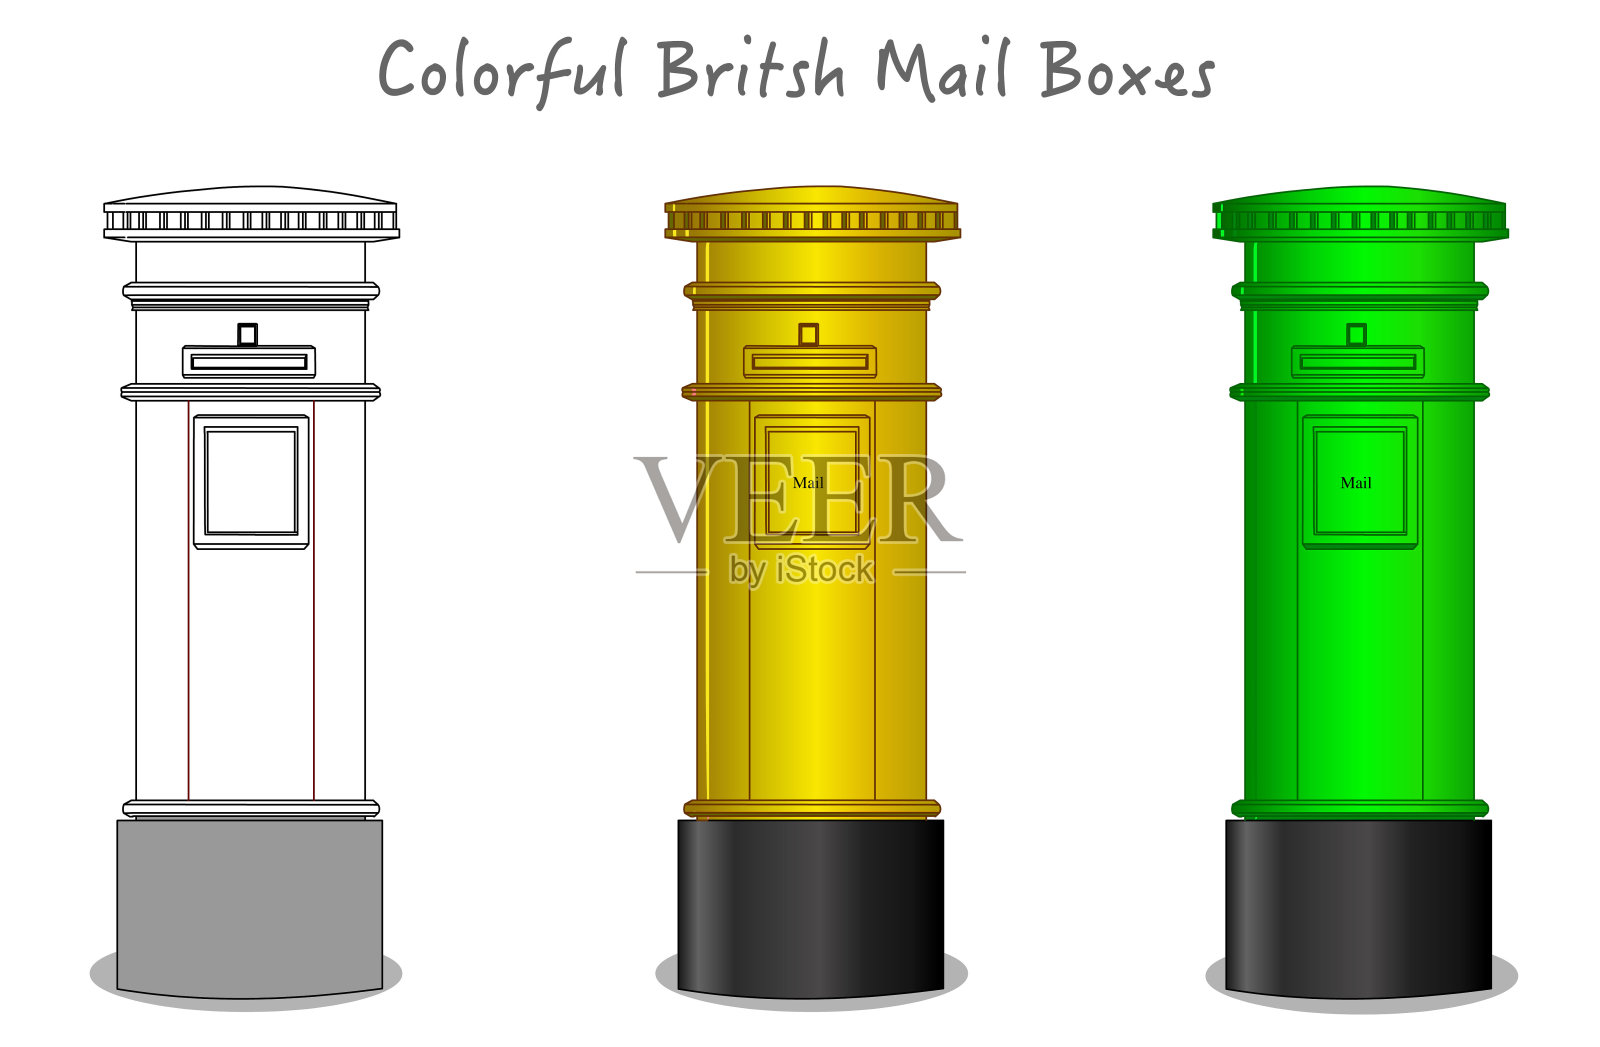 英国、伦敦五颜六色的邮箱、邮筒。绿色、黄色的邮箱设计。黑白、工艺图纸、彩色圆筒信箱。英国，英国古典文化物品。未来艺术画矢量设计元素图片